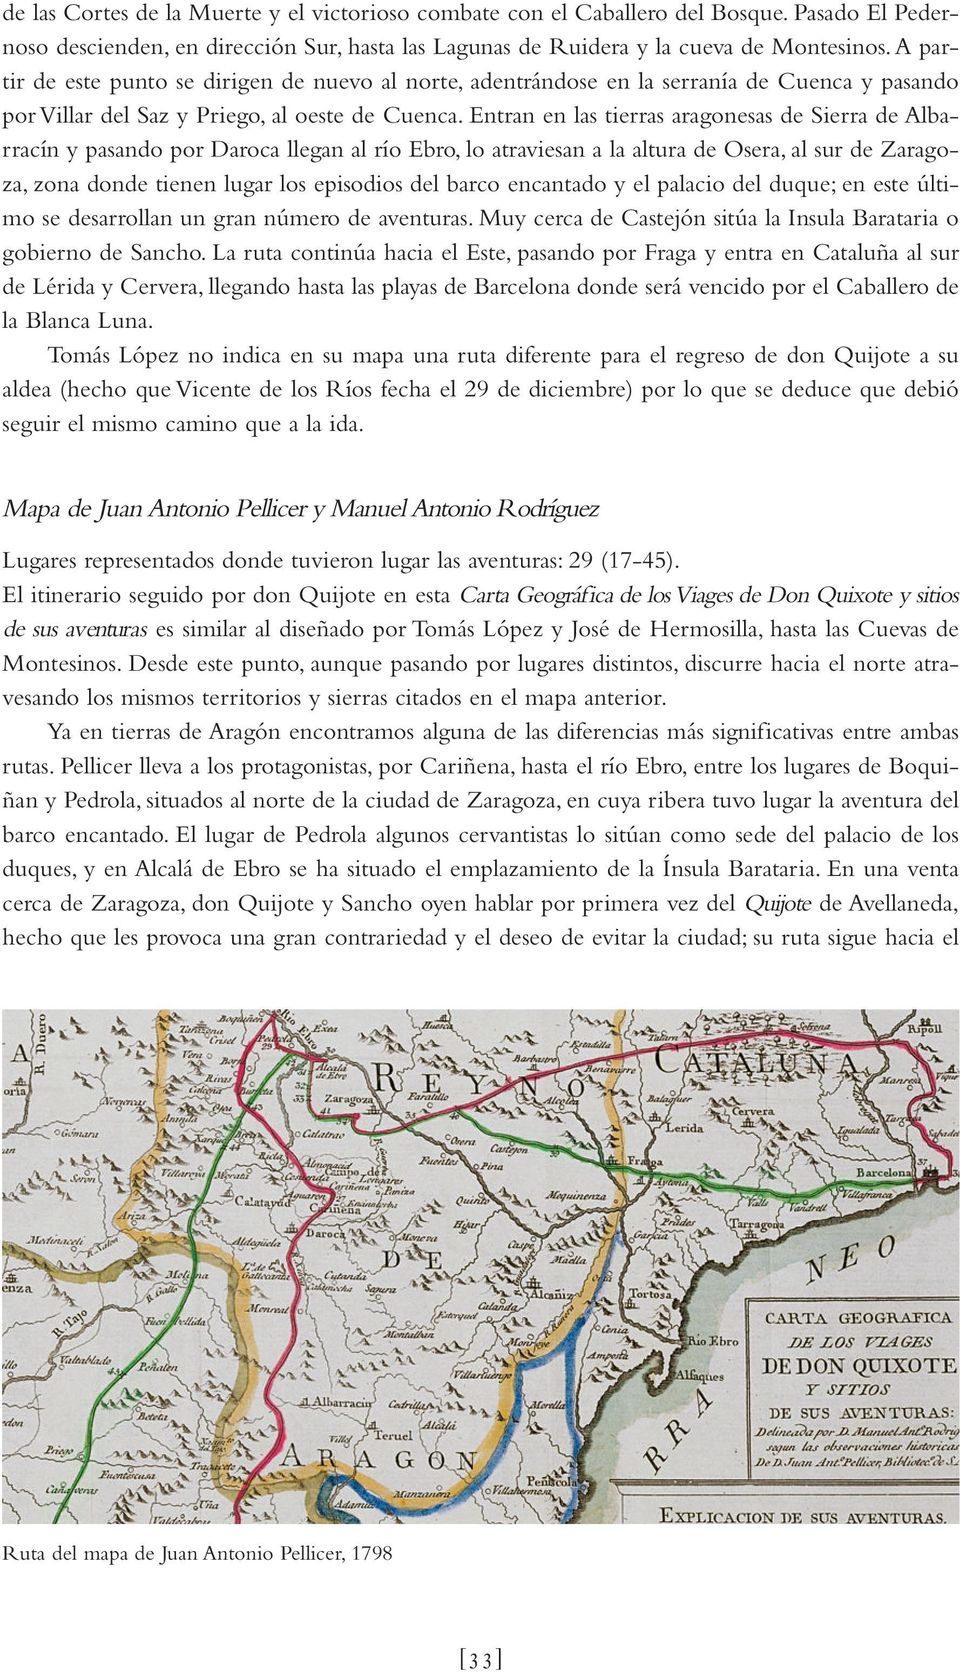 Entran en las tierras aragonesas de Sierra de Albarracín y pasando por Daroca llegan al río Ebro, lo atraviesan a la altura de Osera, al sur de Zaragoza, zona donde tienen lugar los episodios del